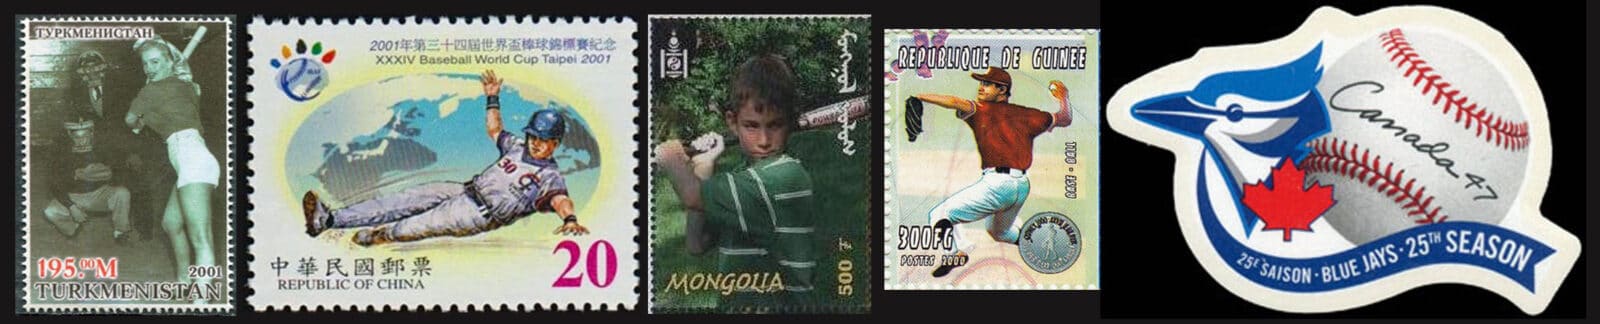 2001 Baseball Postage Stamps Header